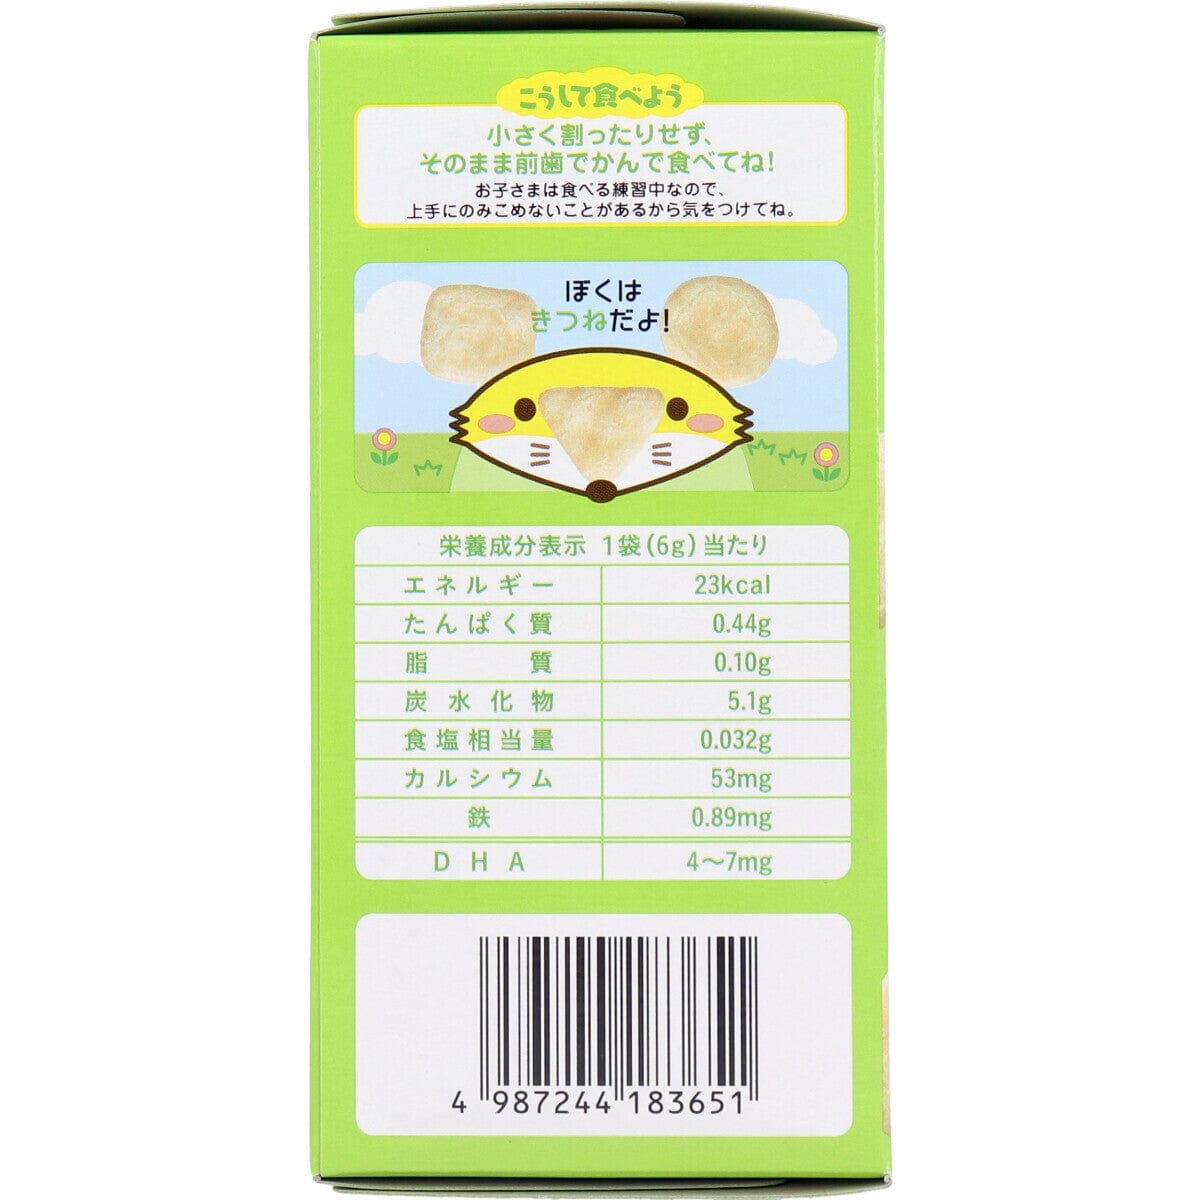 Wakodo - Baby Snacks + DHA Shrimp Crackers 6g x 3 bags WAK1015 CherryAffairs